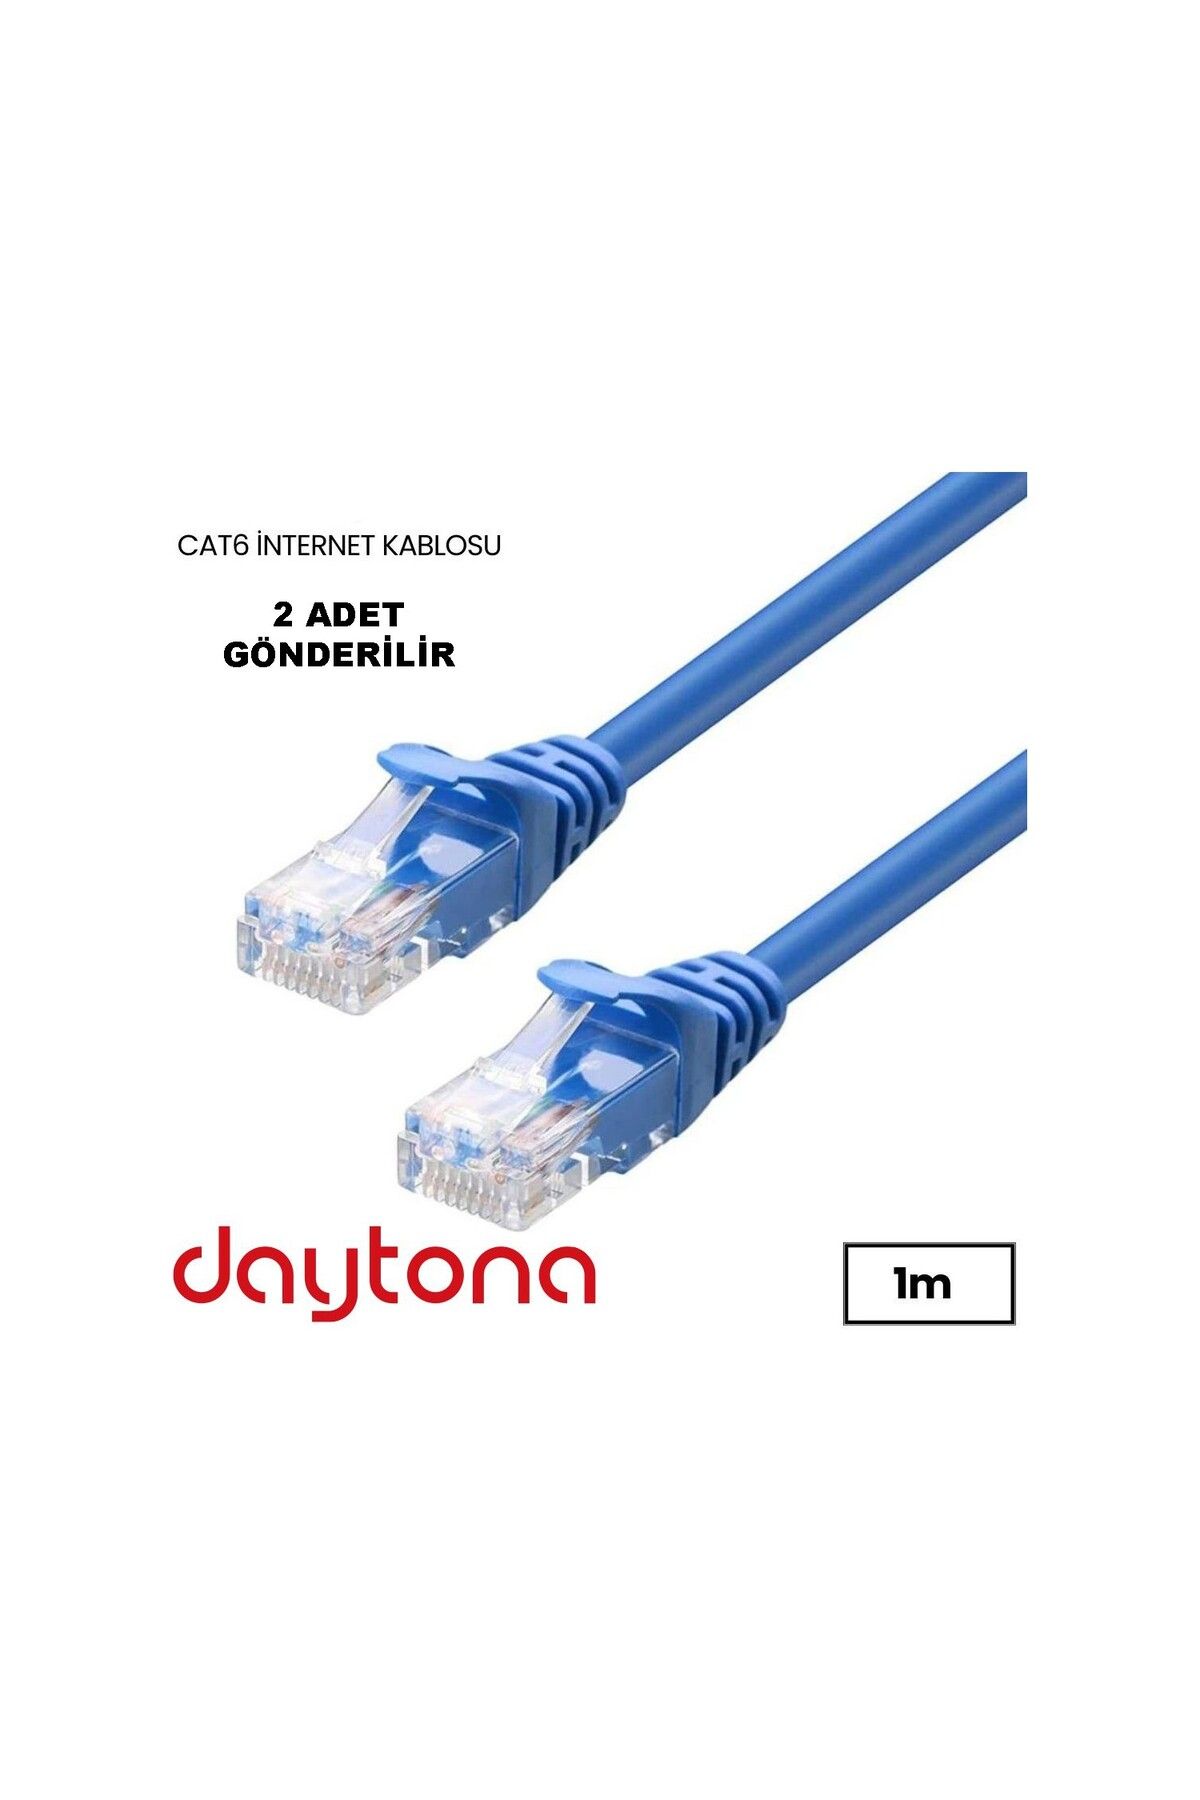 Daytona A4937 Cat6 Gigabit Internet Ethernet 10gbps Rj45 Lan Kablosu 1 Metre (2 ADET)